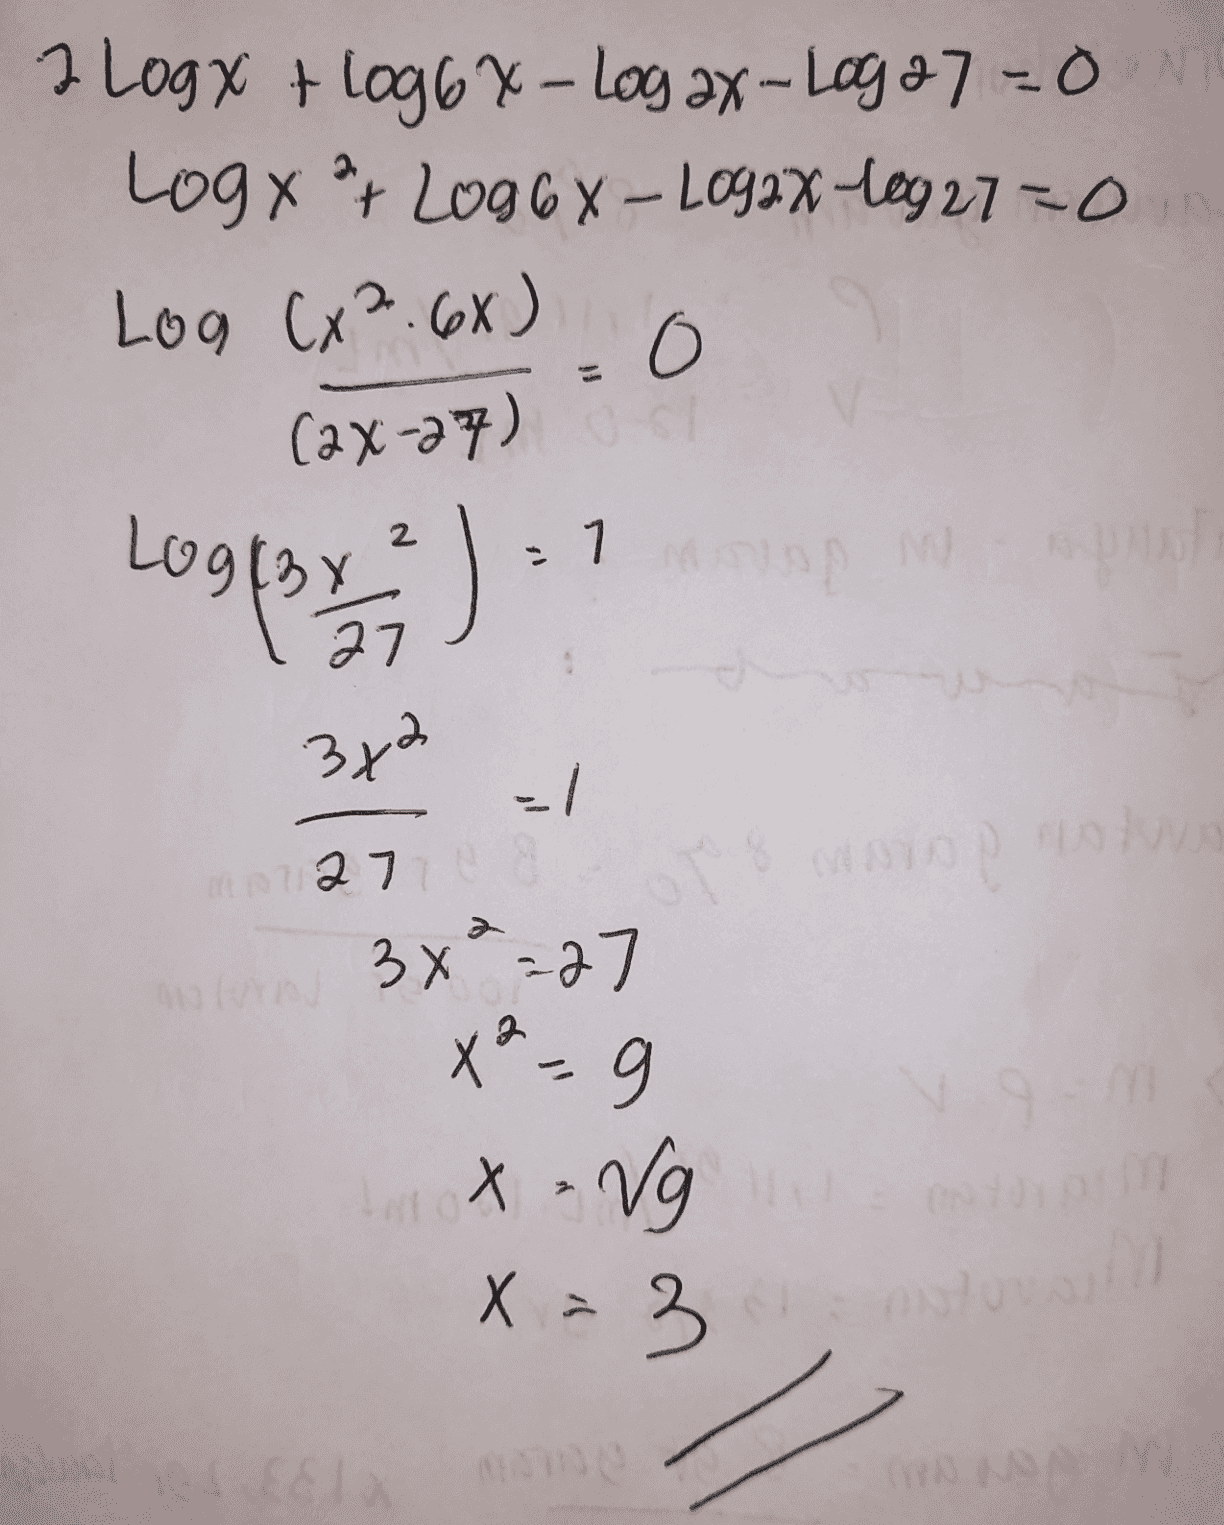 I Logy + log6x-Log ax-Log 27 =ON Logx ? Log66-L092x-10927700 Log Cx².6X) o (ax-27) 1 Logfar ) 3x2 -1 Do 27 OT X X² - 9 3 x ² =27 g Inox - Vg X = 30 EST 